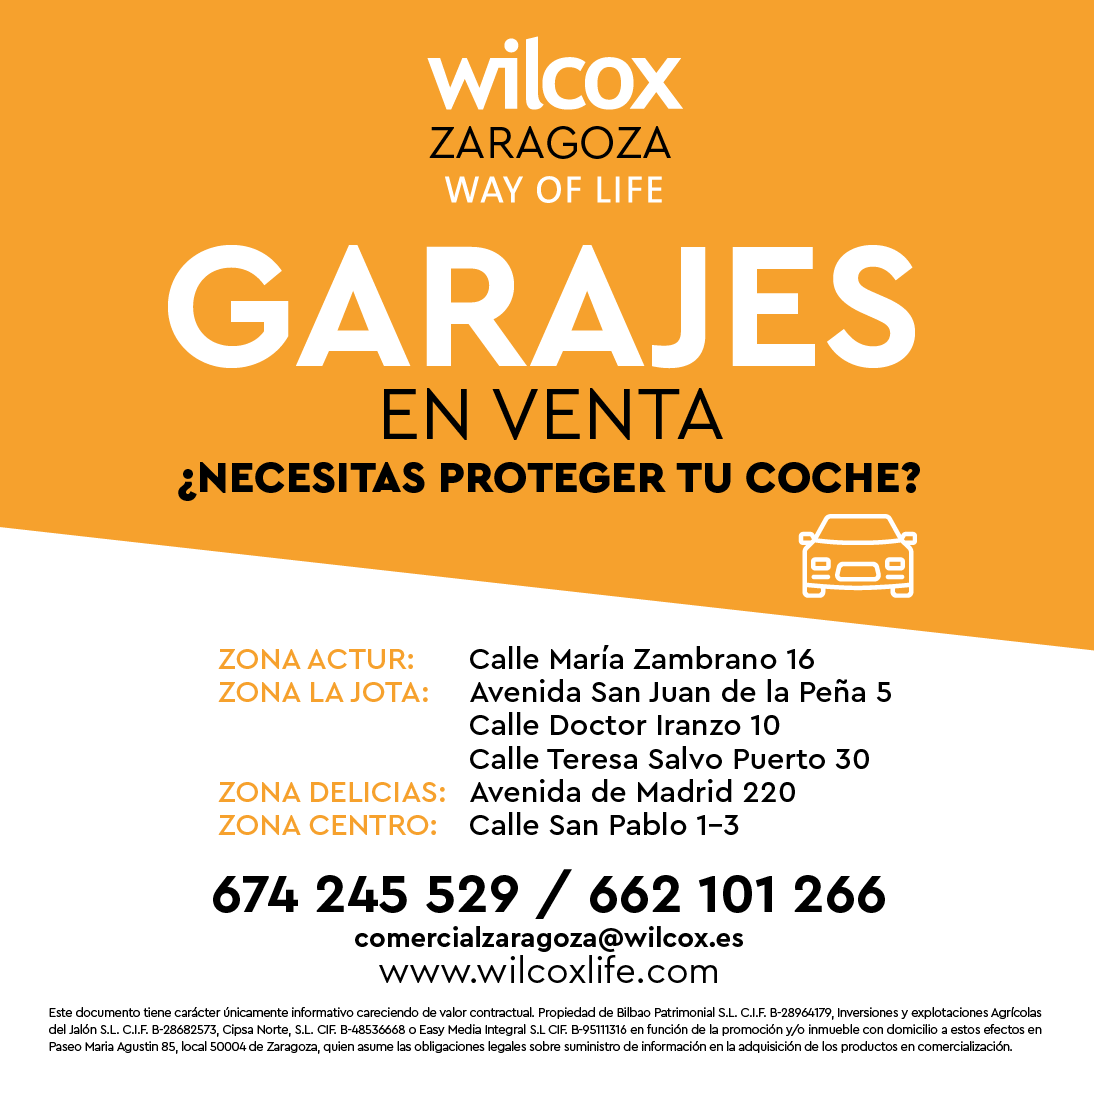 Garajes en venta disponibles en Zaragoza